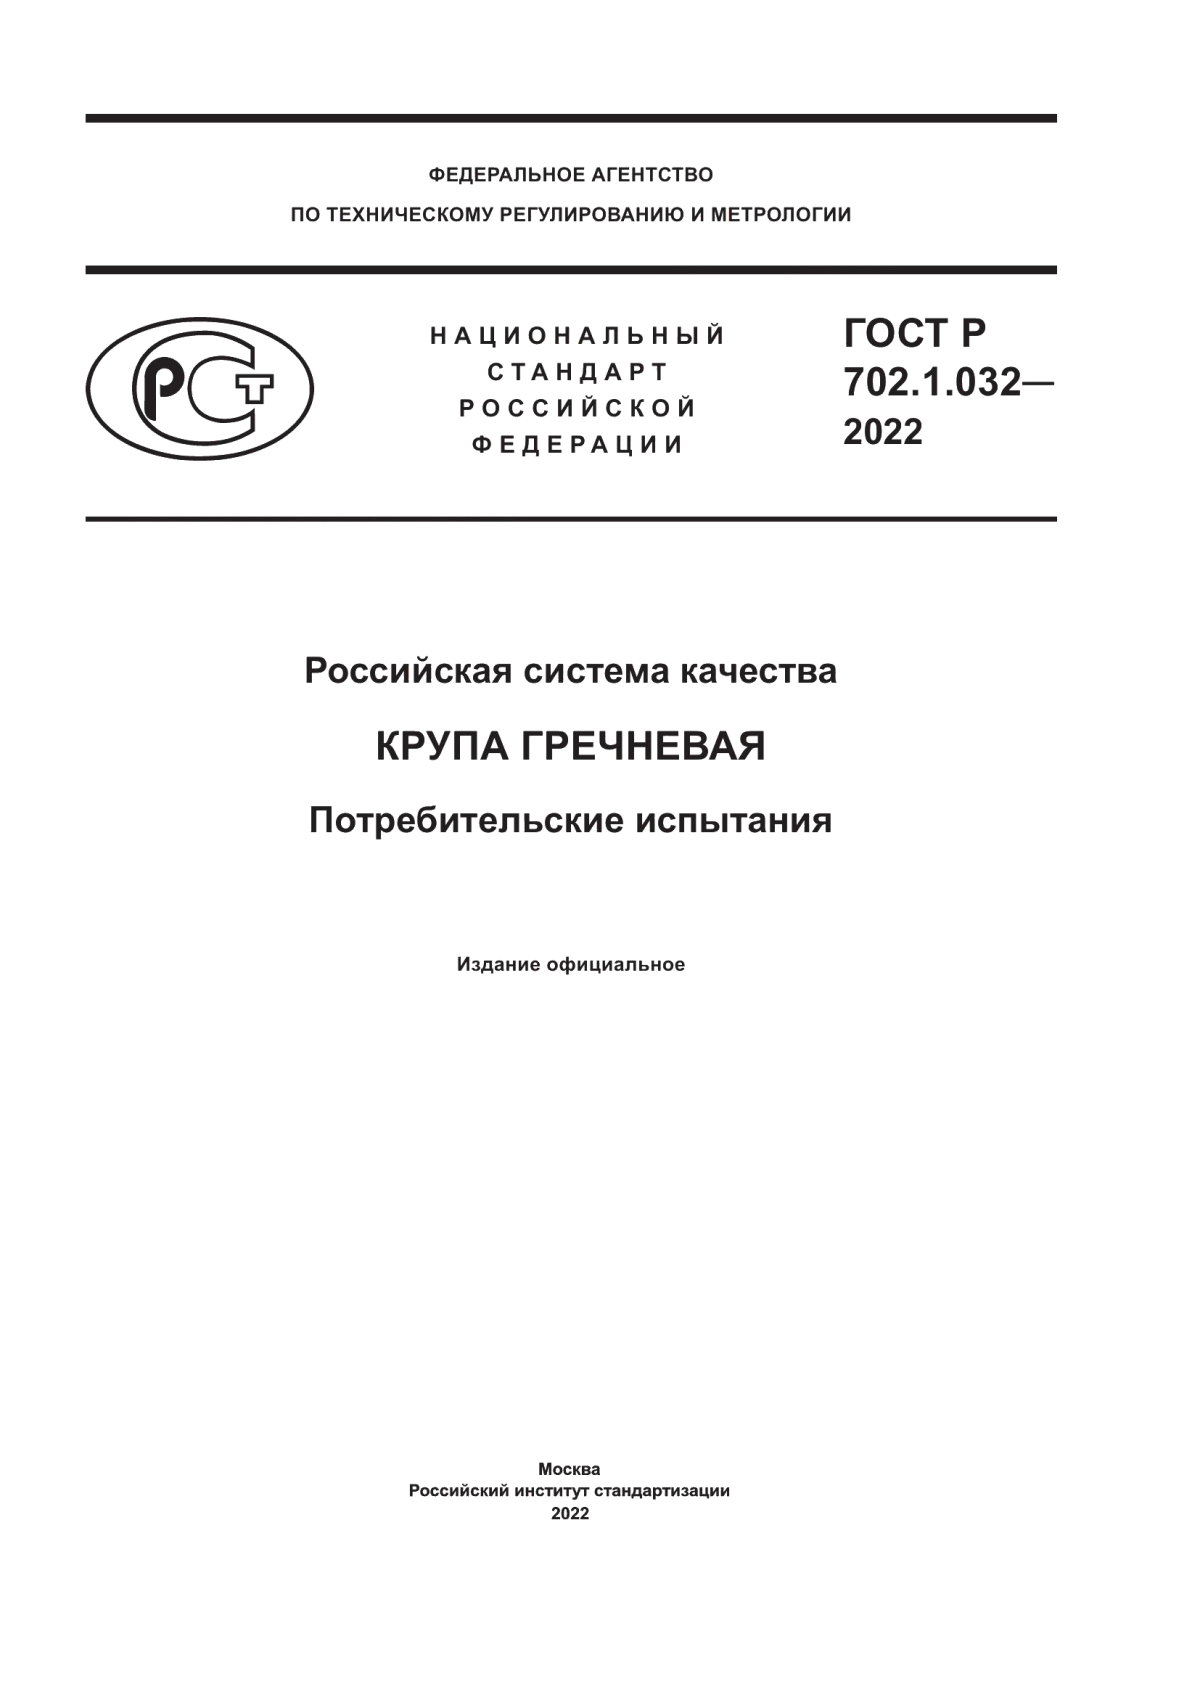 ГОСТ Р 702.1.032-2022 Российская система качества. Крупа гречневая. Потребительские испытания